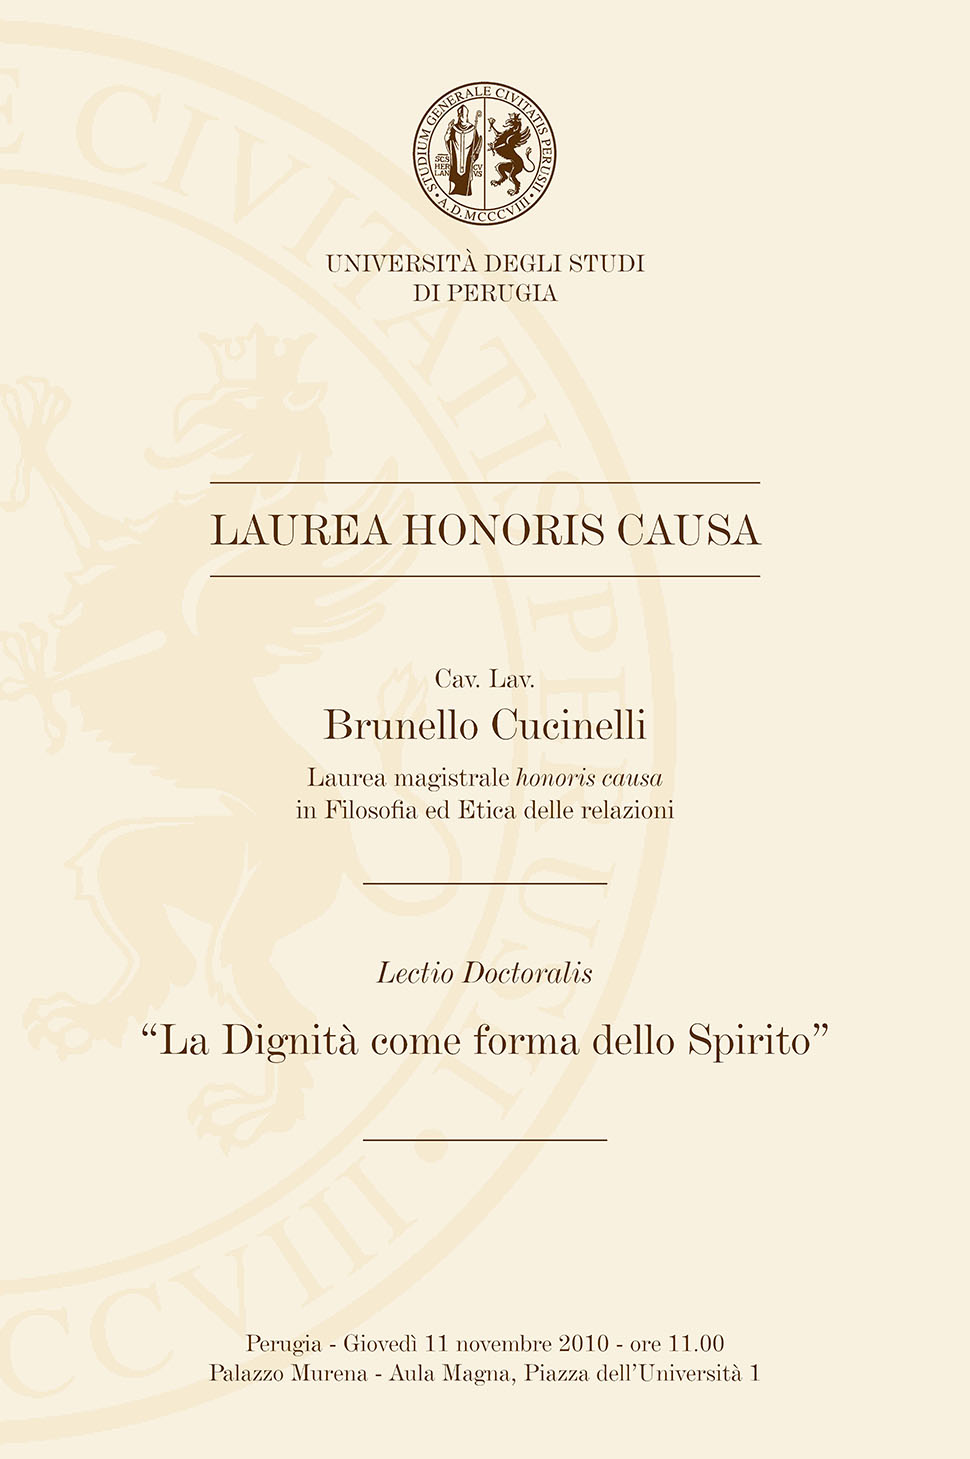 2010 - Laurea Honoris Causa